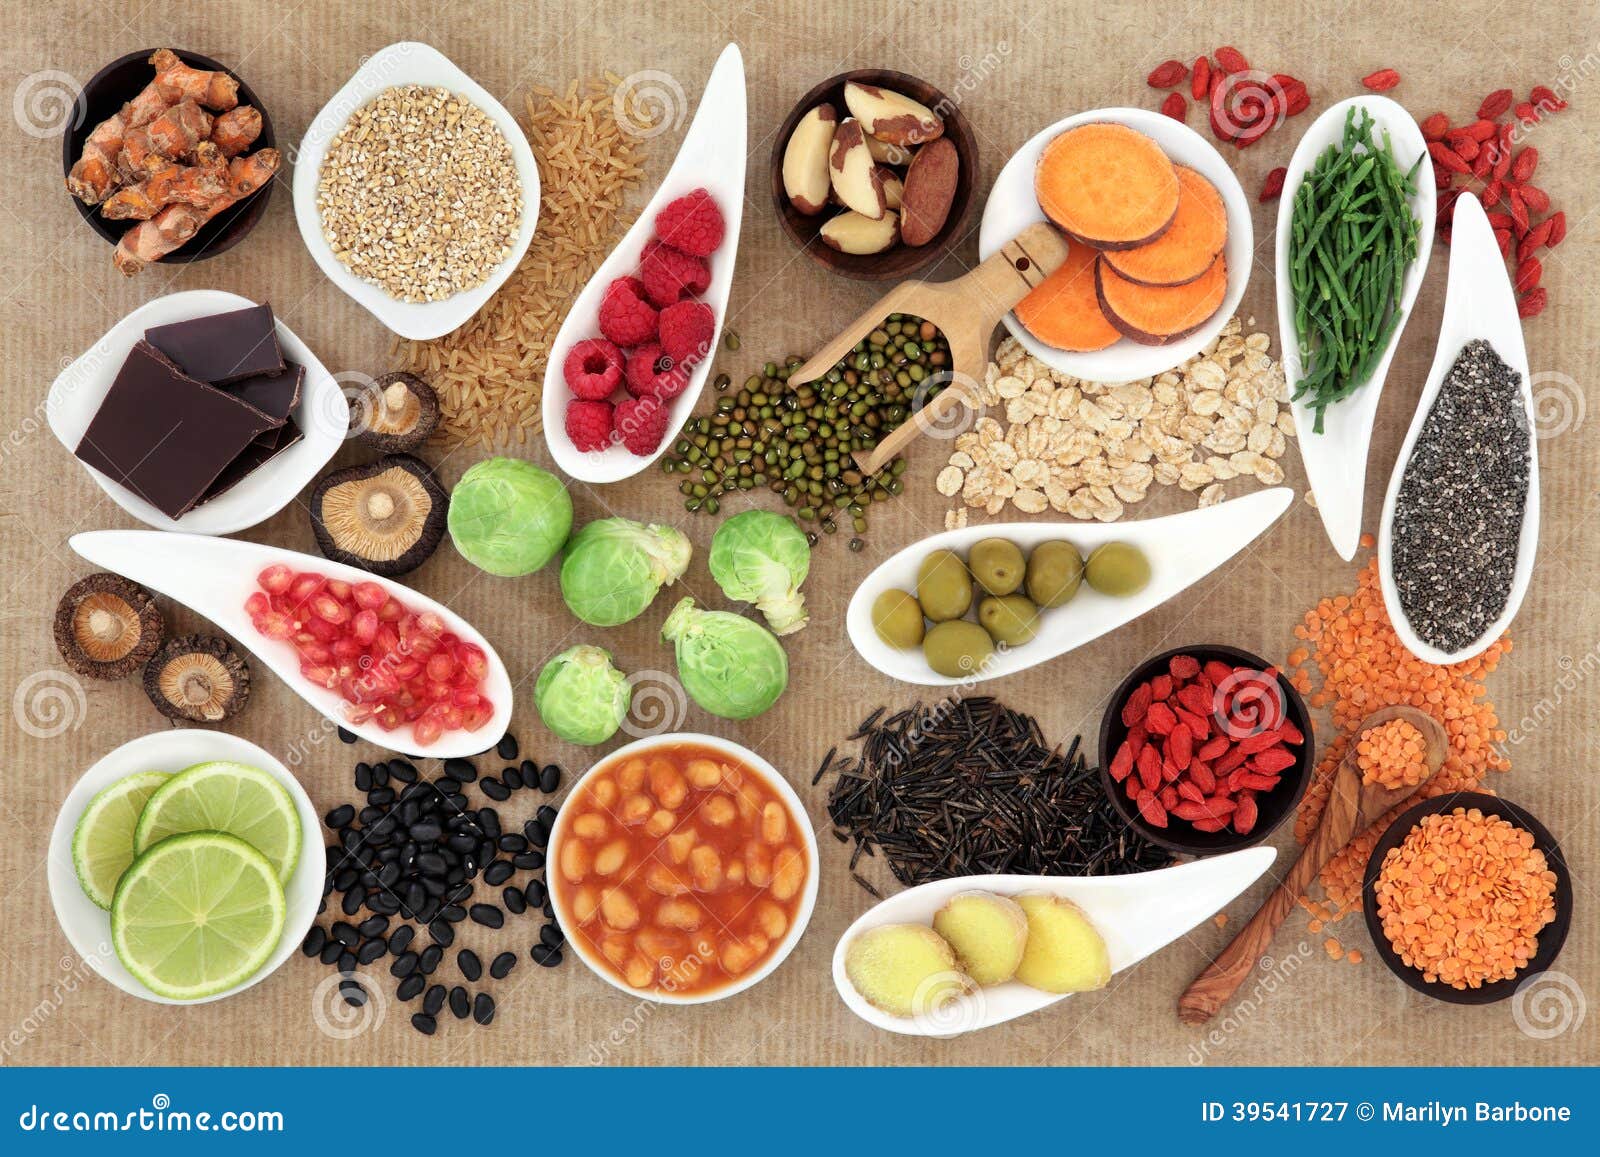 健康食品如何开拓国际市场?